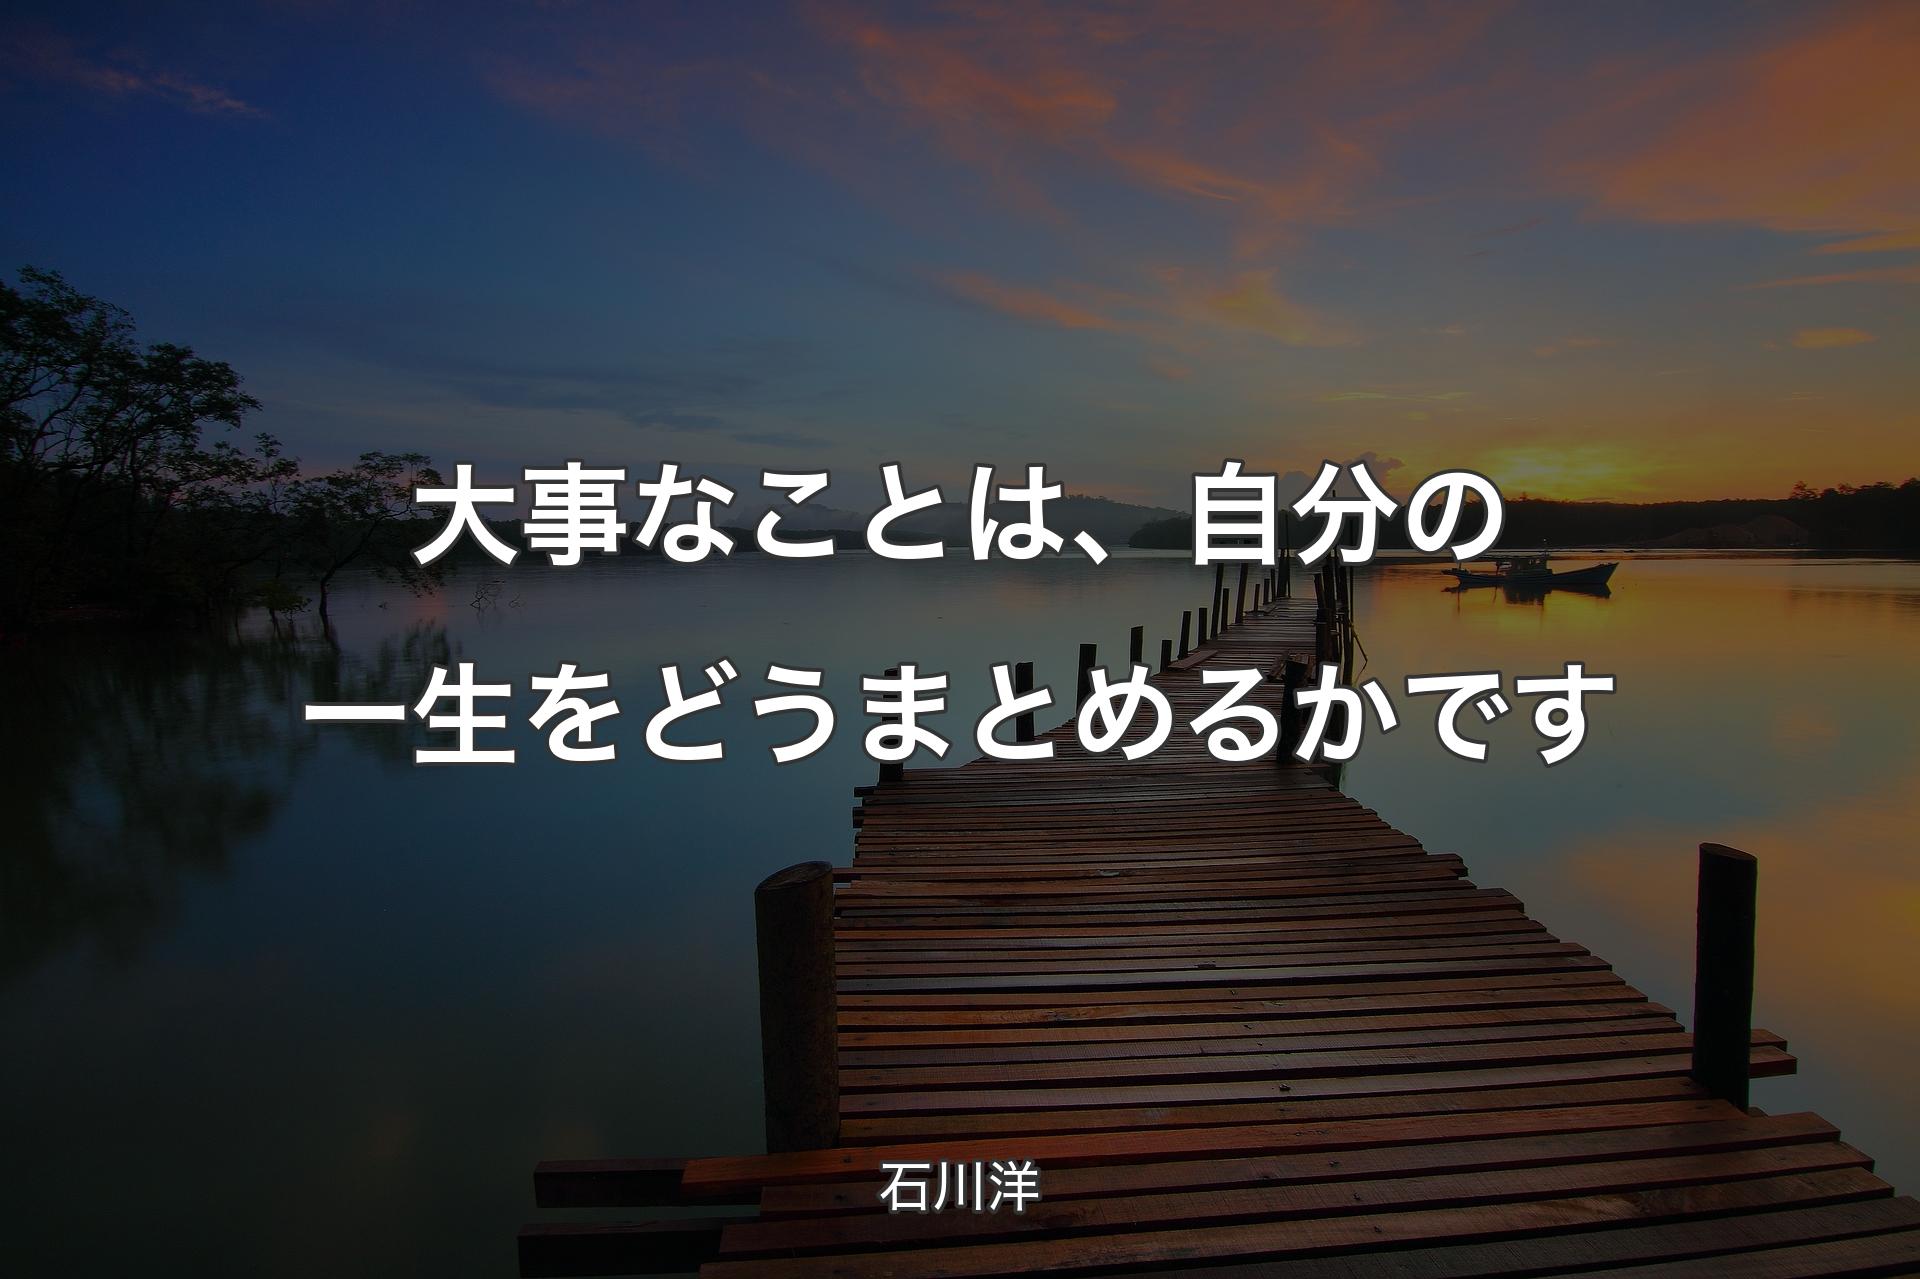 【背景3】大事なことは、自分の一生をどうまとめるかです - 石川洋